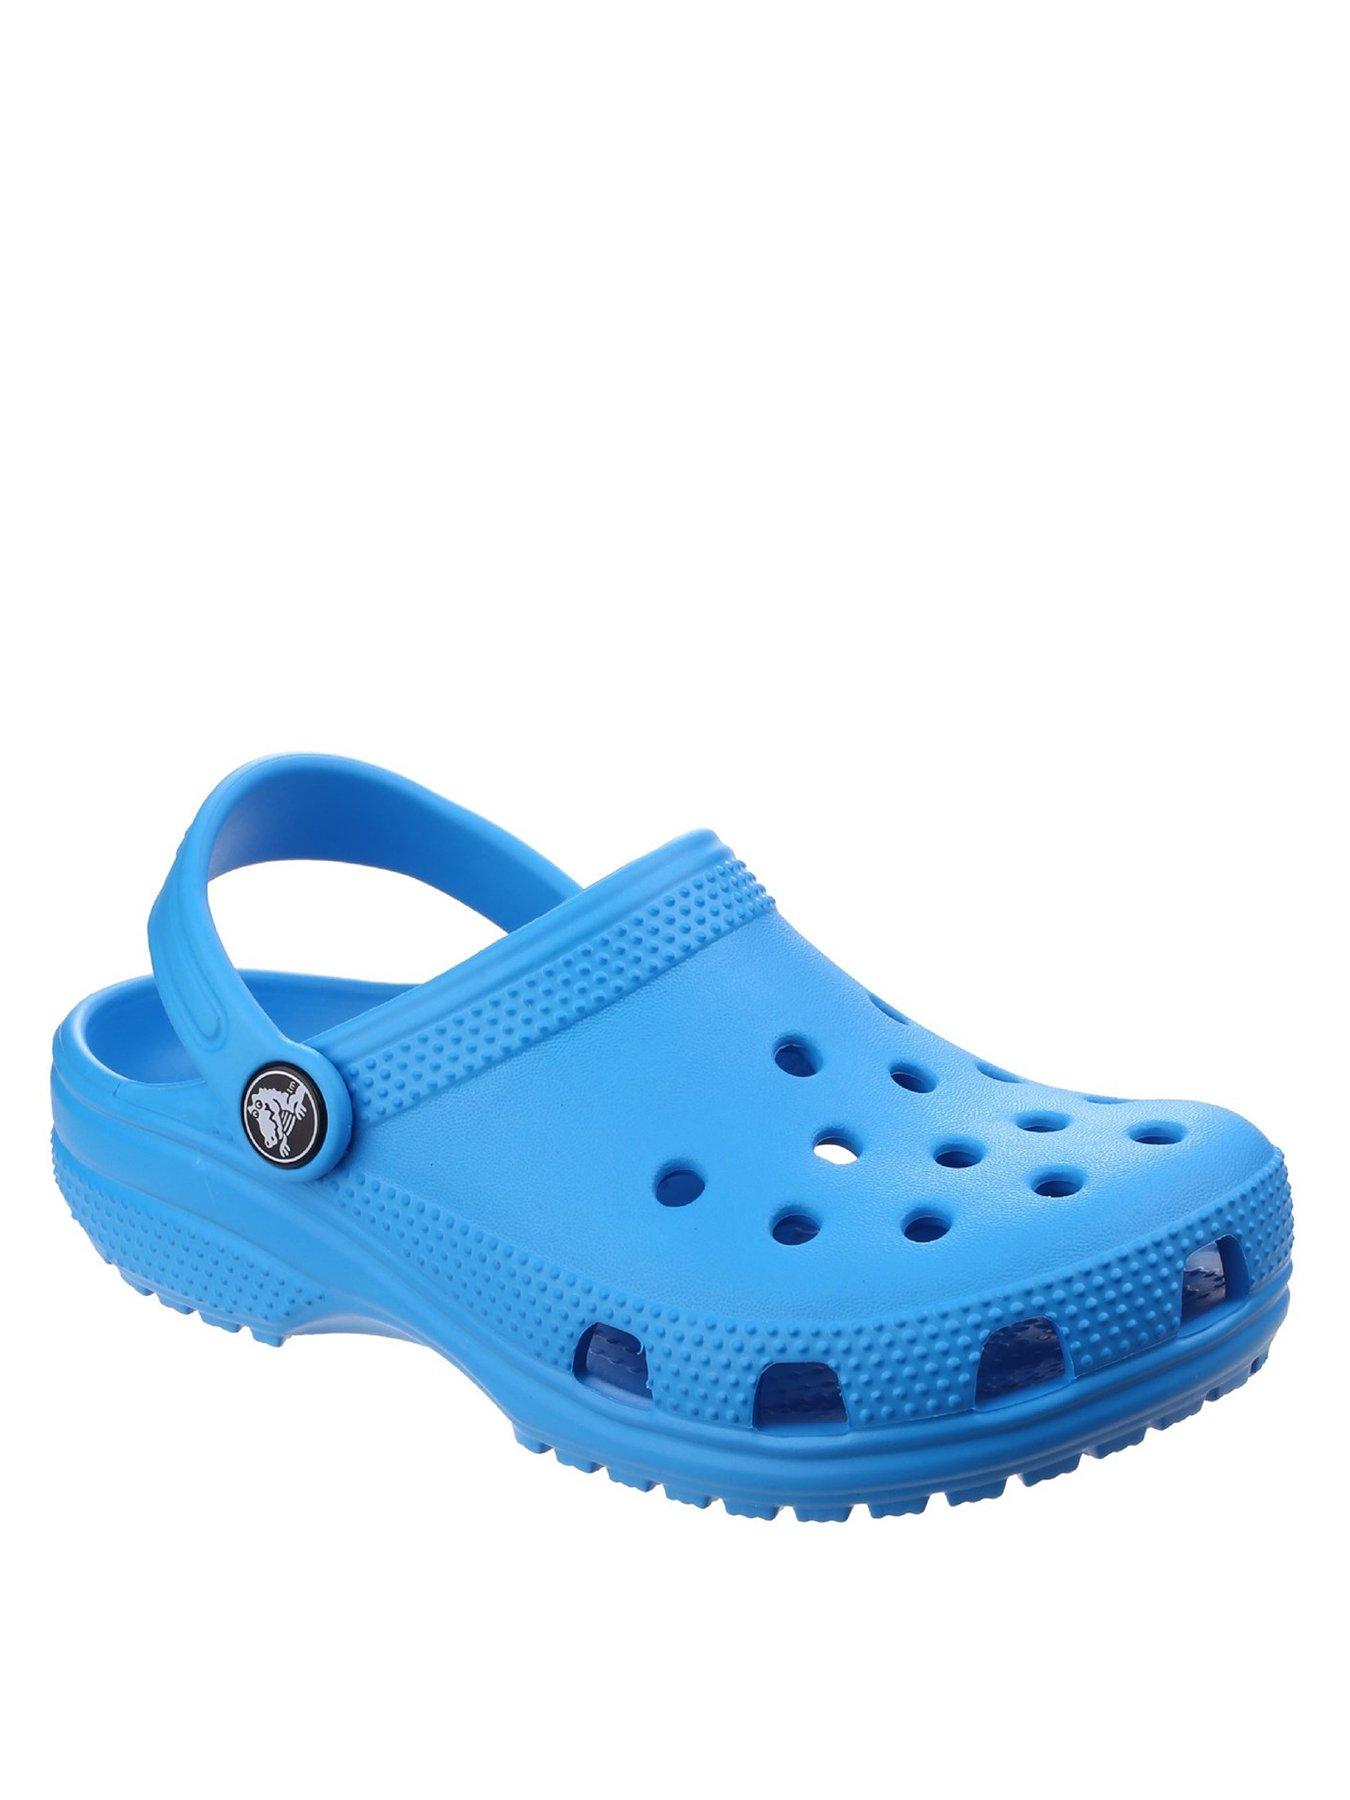 crocs kids size 4